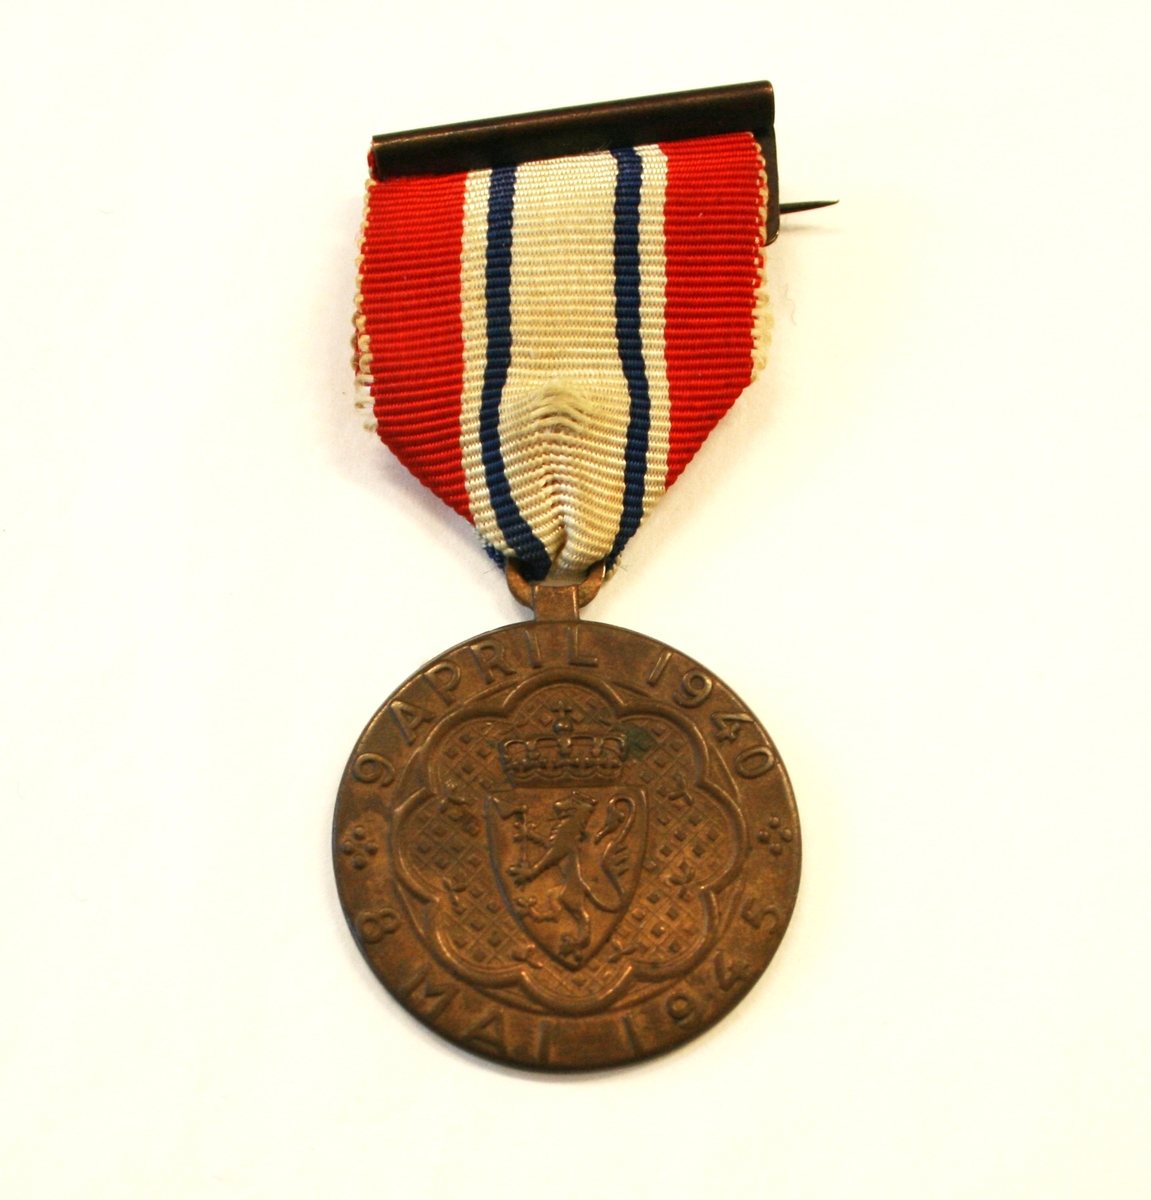 Medaljen har en rosett med riksvåpenet i, med omskrift «9 APRIL 1940 * 8 MAI 1945 *» på advers. På revers kongeflagget, handelsflagg og orlogsflagg og innskrift «DELTAGER I KAMPEN». Motivet er omgitt av en lenke.
Miniatyren har en rosett.